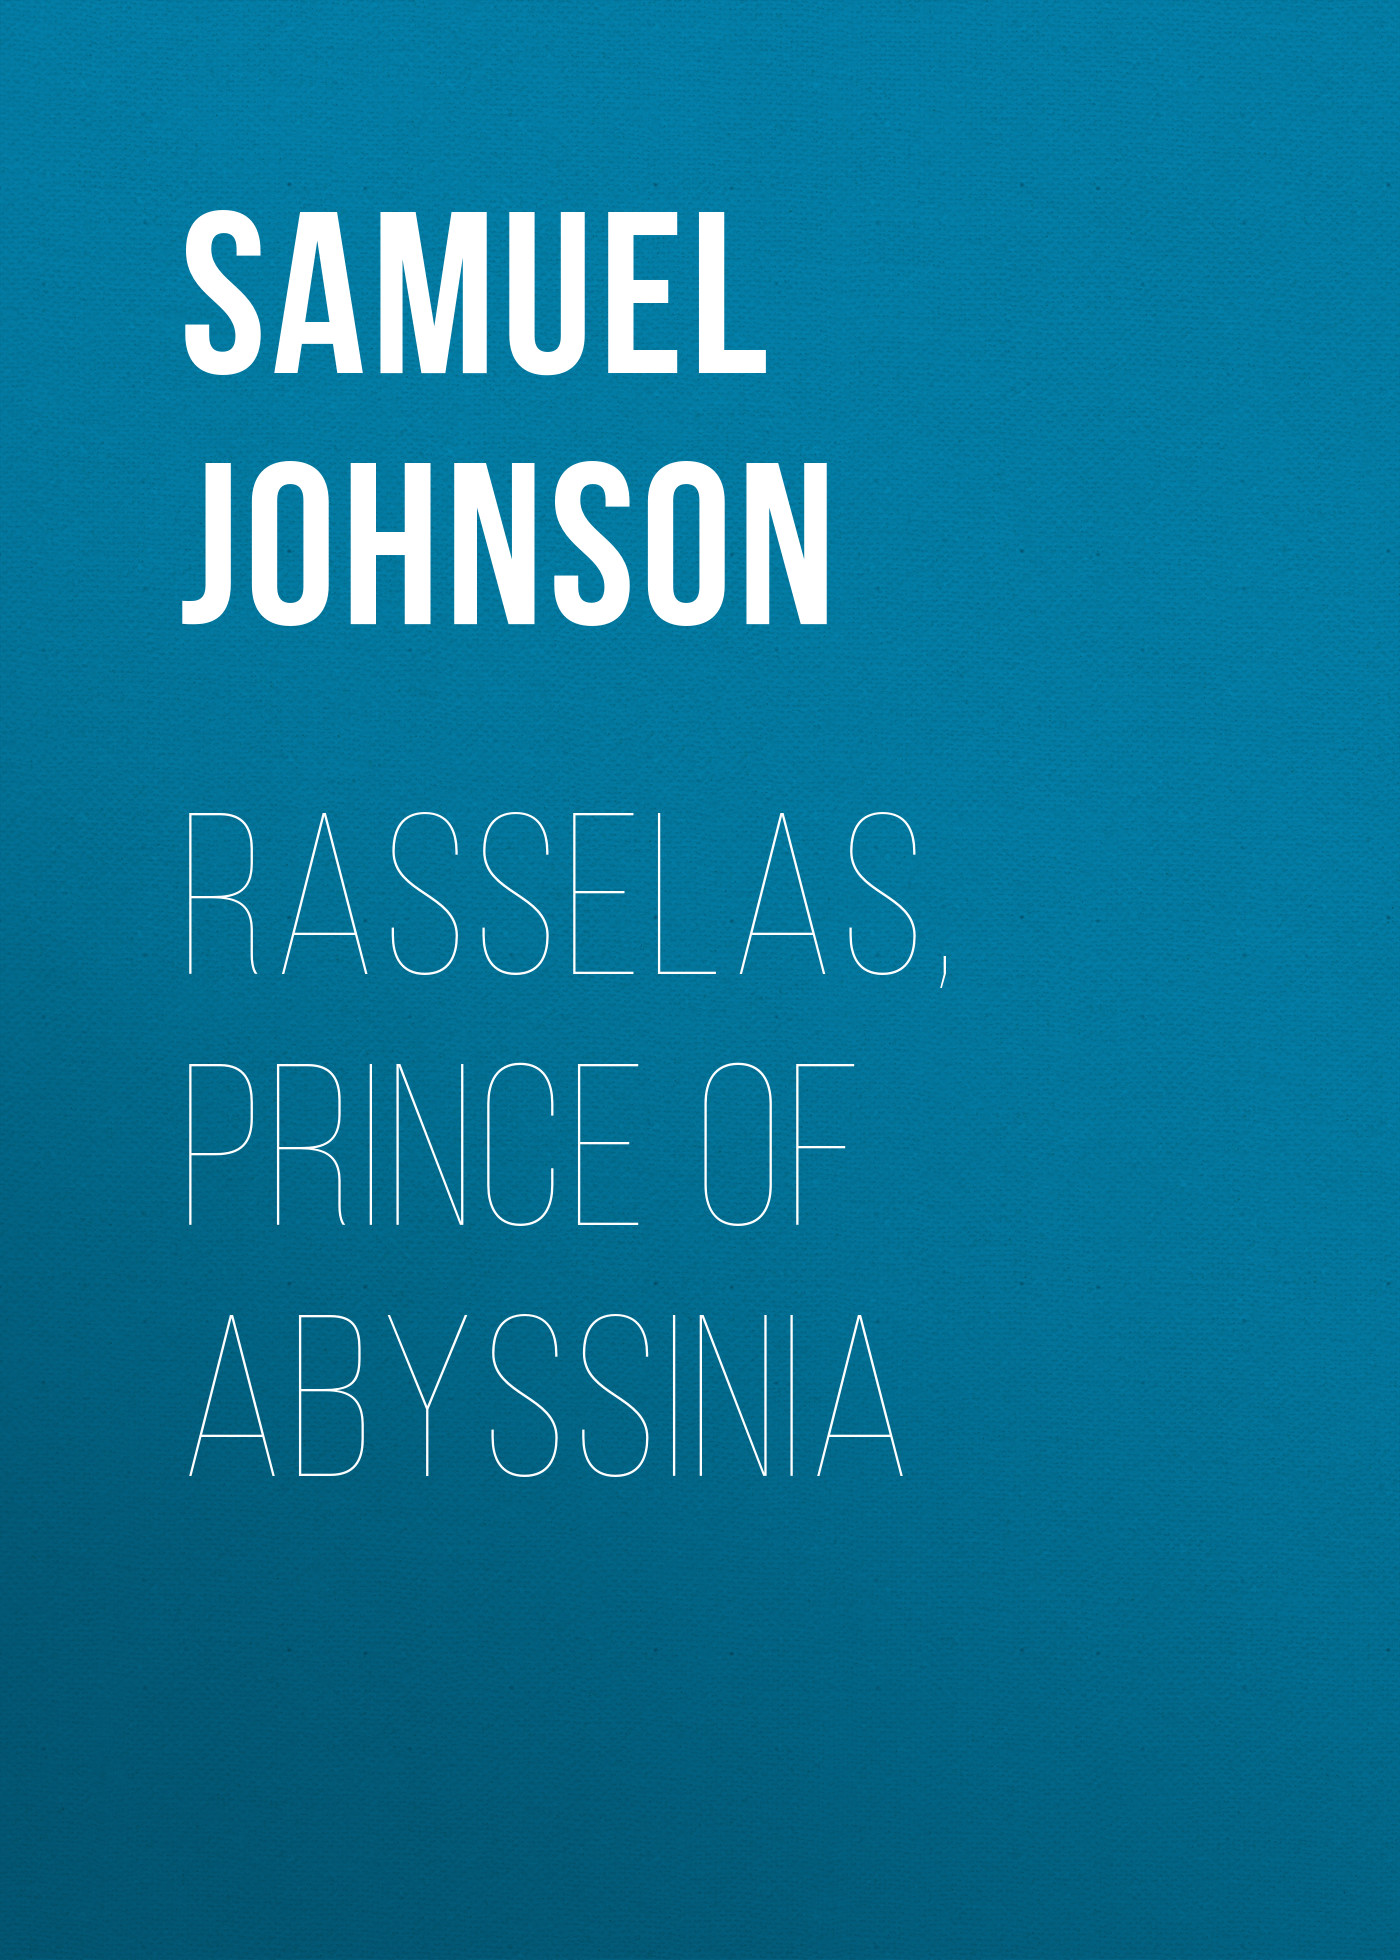 Книга Rasselas, Prince of Abyssinia из серии , созданная Samuel Johnson, может относится к жанру Зарубежный юмор, Юмор: прочее, Литература 18 века, Зарубежная старинная литература. Стоимость электронной книги Rasselas, Prince of Abyssinia с идентификатором 36094245 составляет 0 руб.